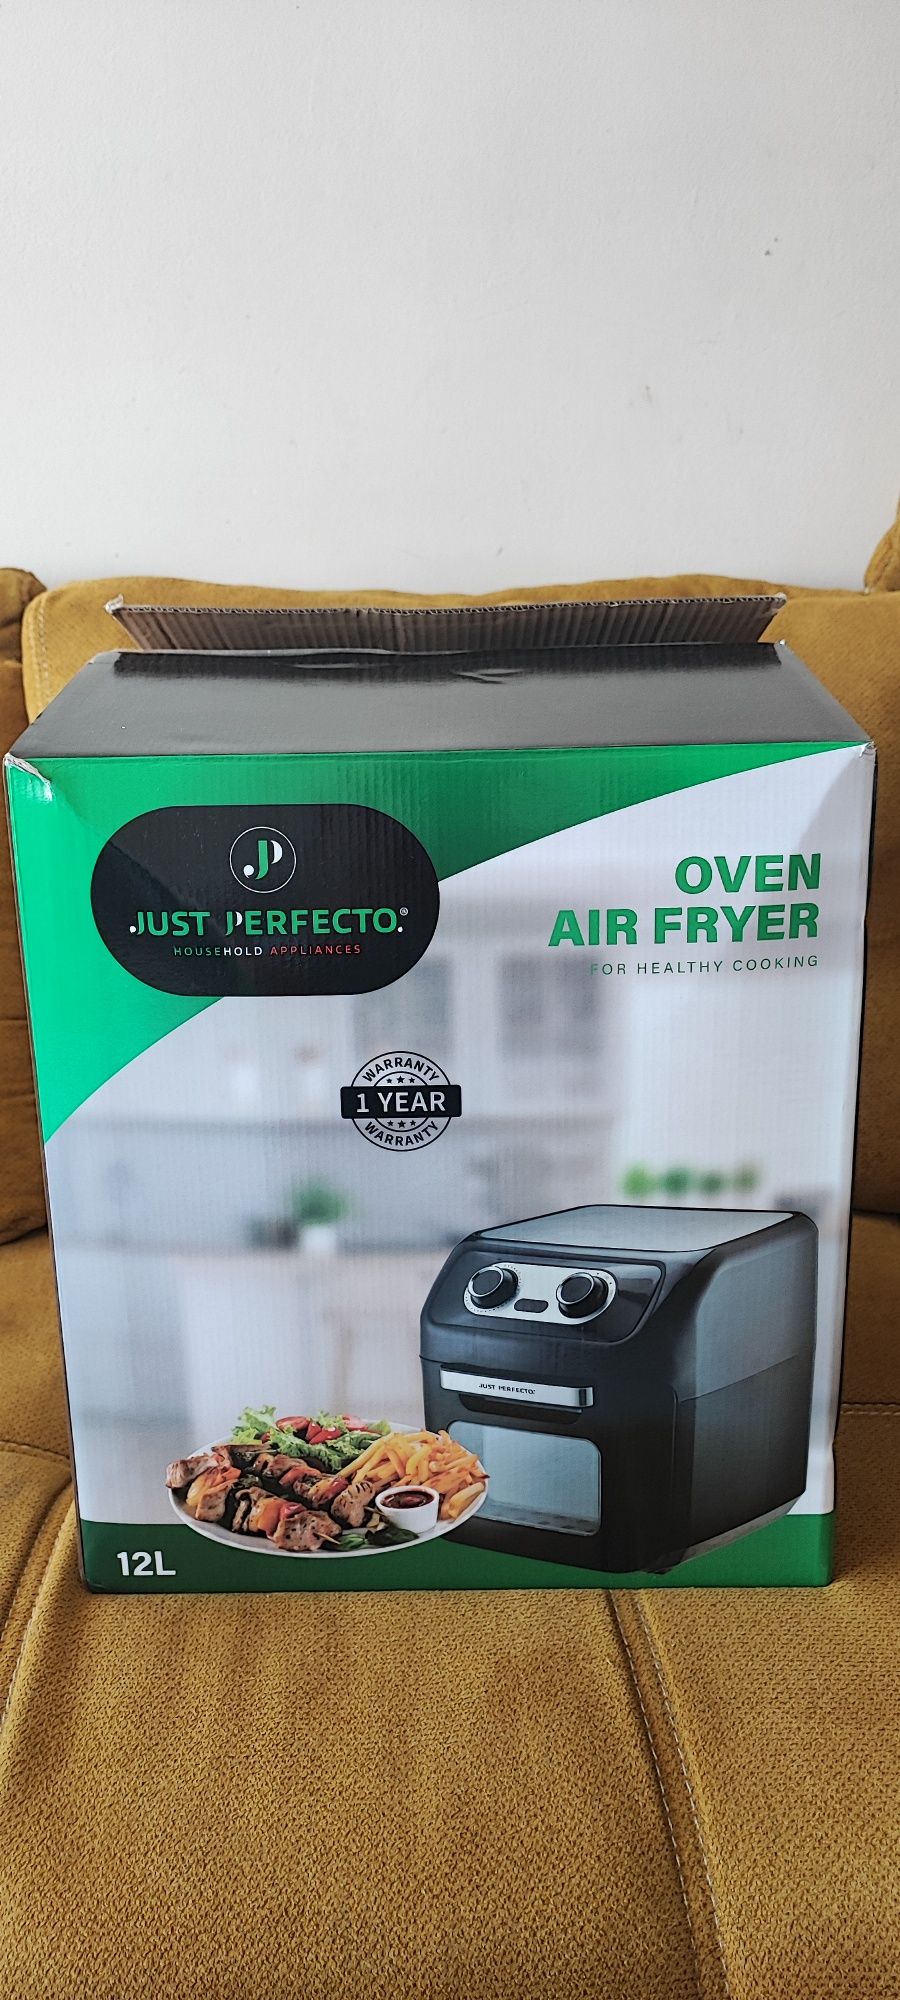 Oven air fryer- фурна с горещ въздух